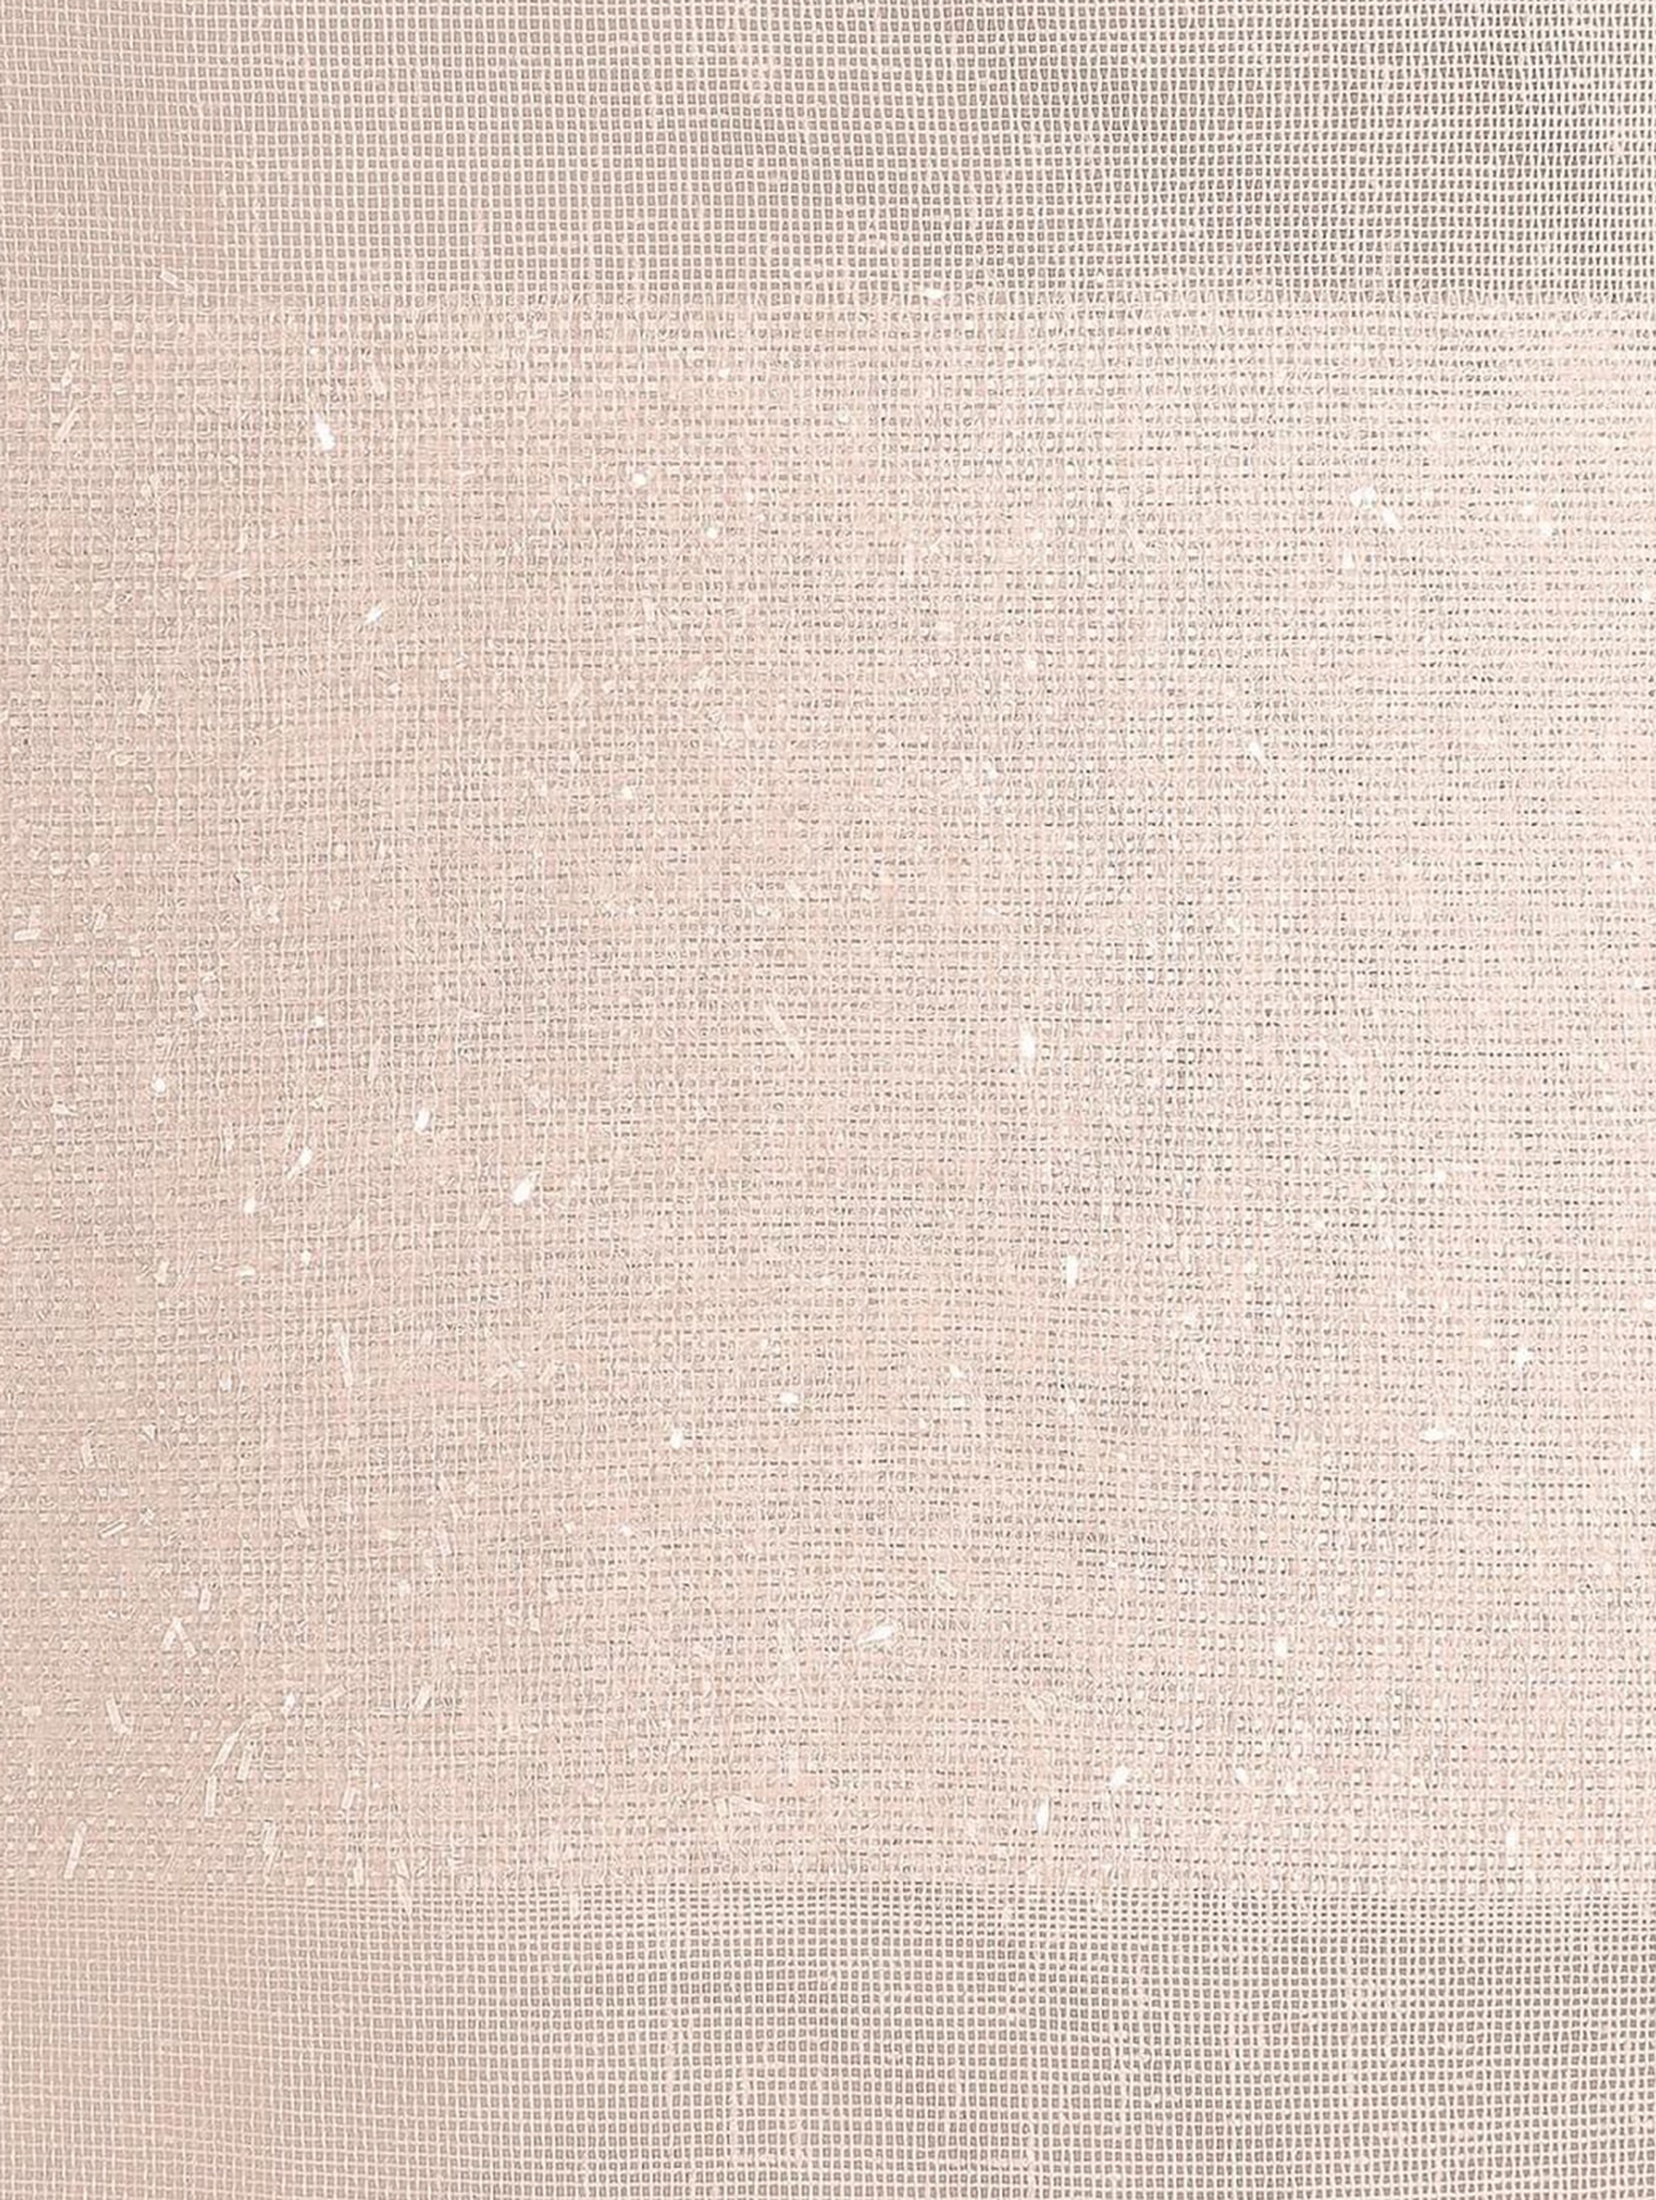 Firana do pokoju Efil 140x250cm - różowa